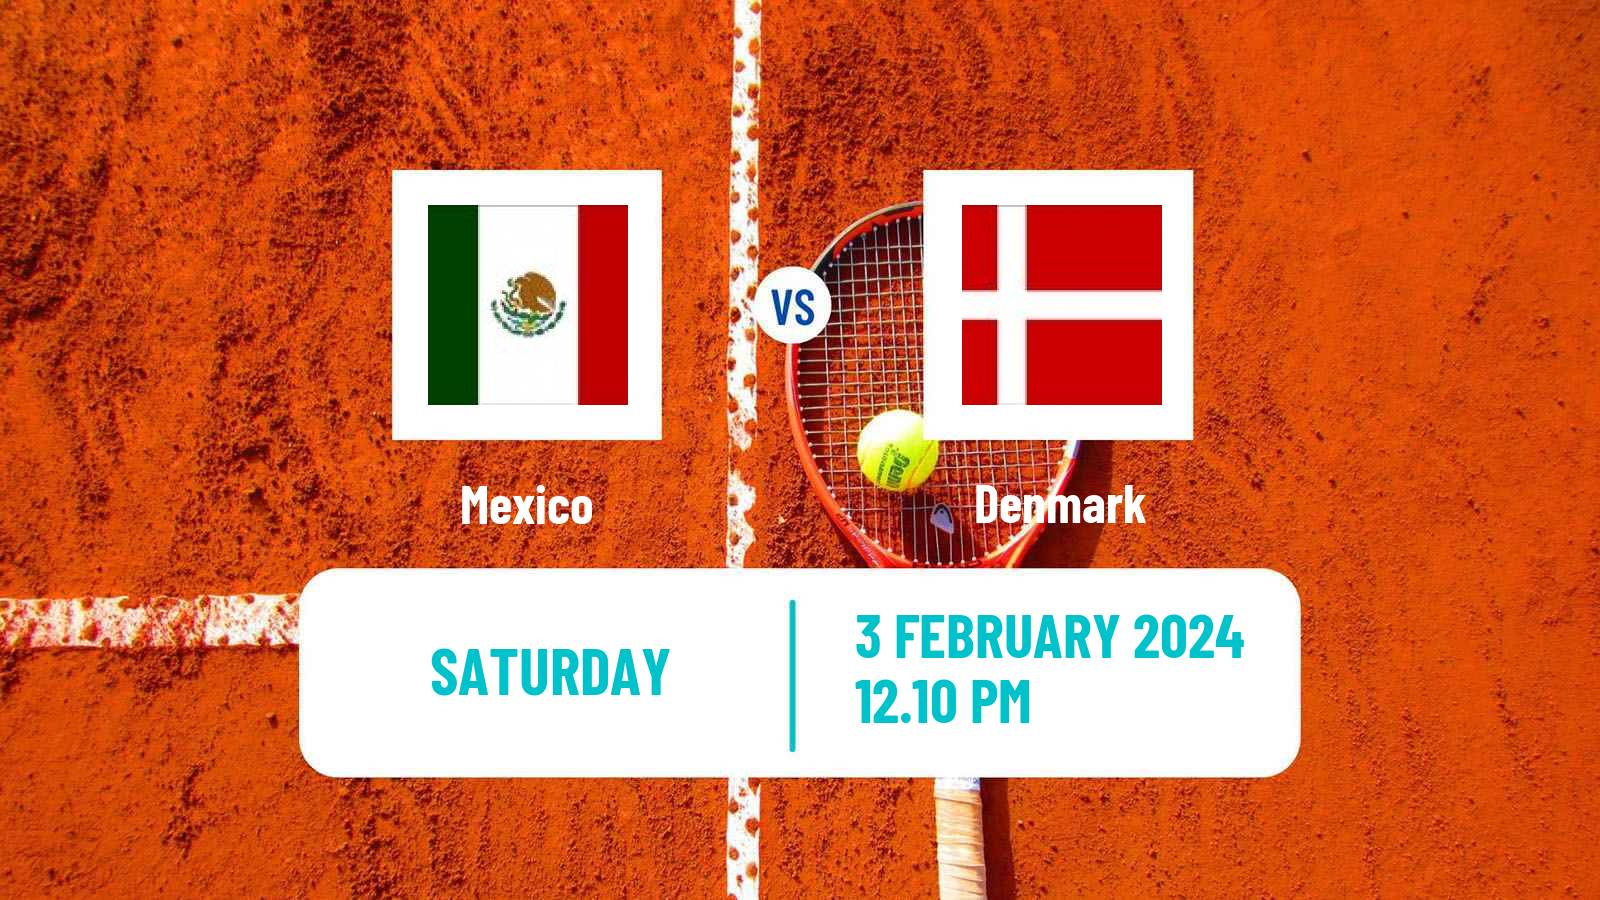 Tennis Davis Cup World Group I Teams Mexico - Denmark